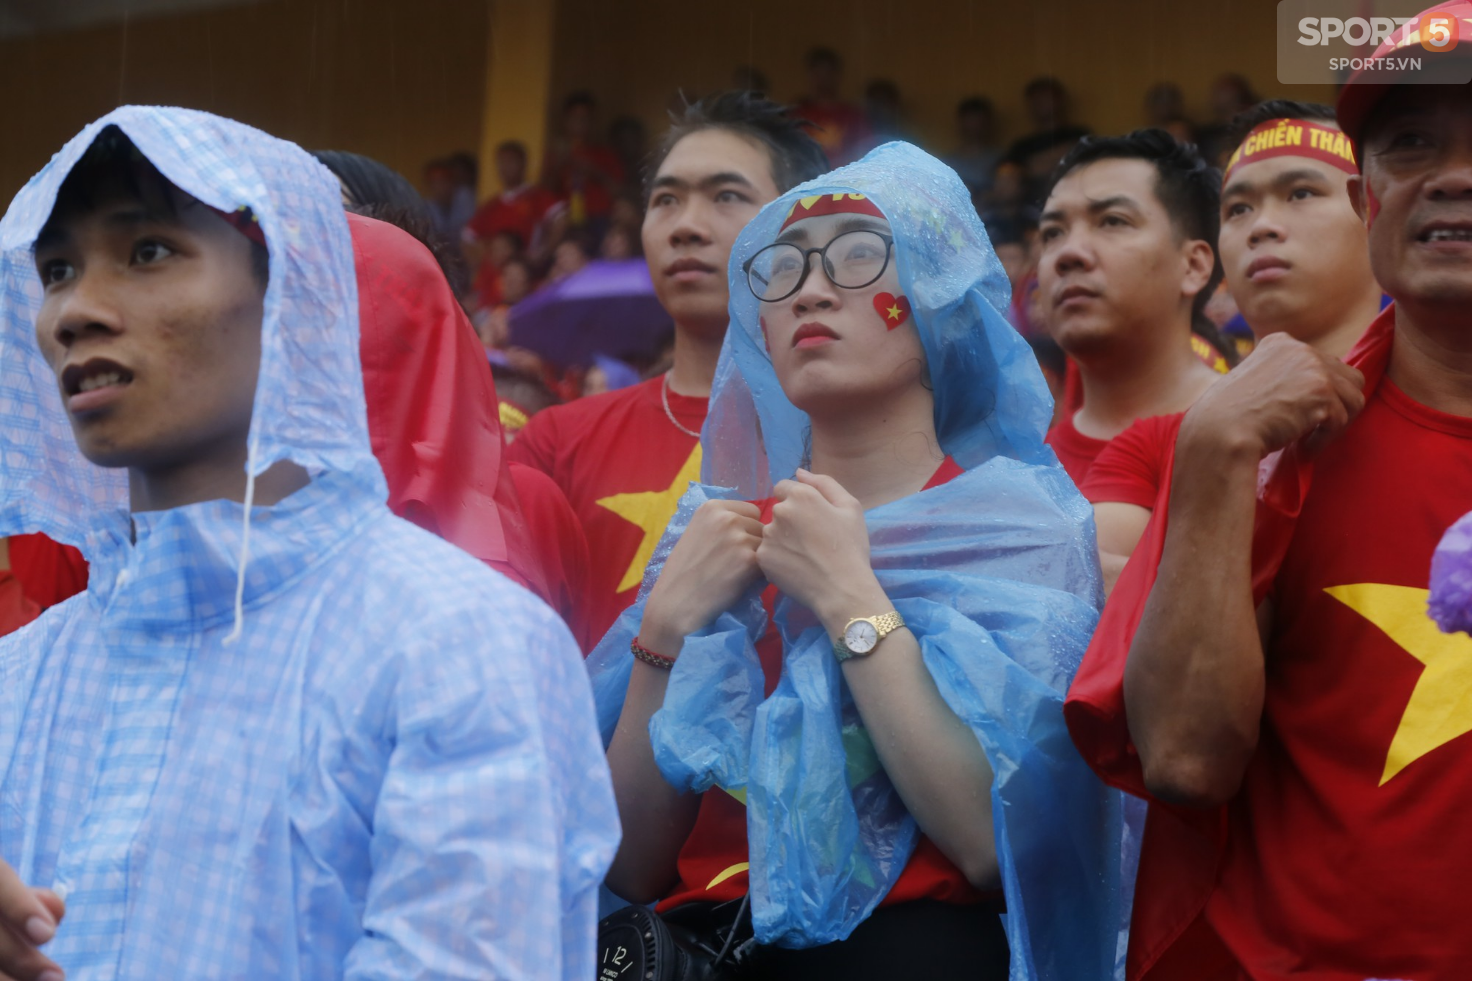 Ấm lòng hình ảnh người hâm mộ Việt Nam đội mưa tới giây cuối cùng dù đội nhà thất bại - Ảnh 11.